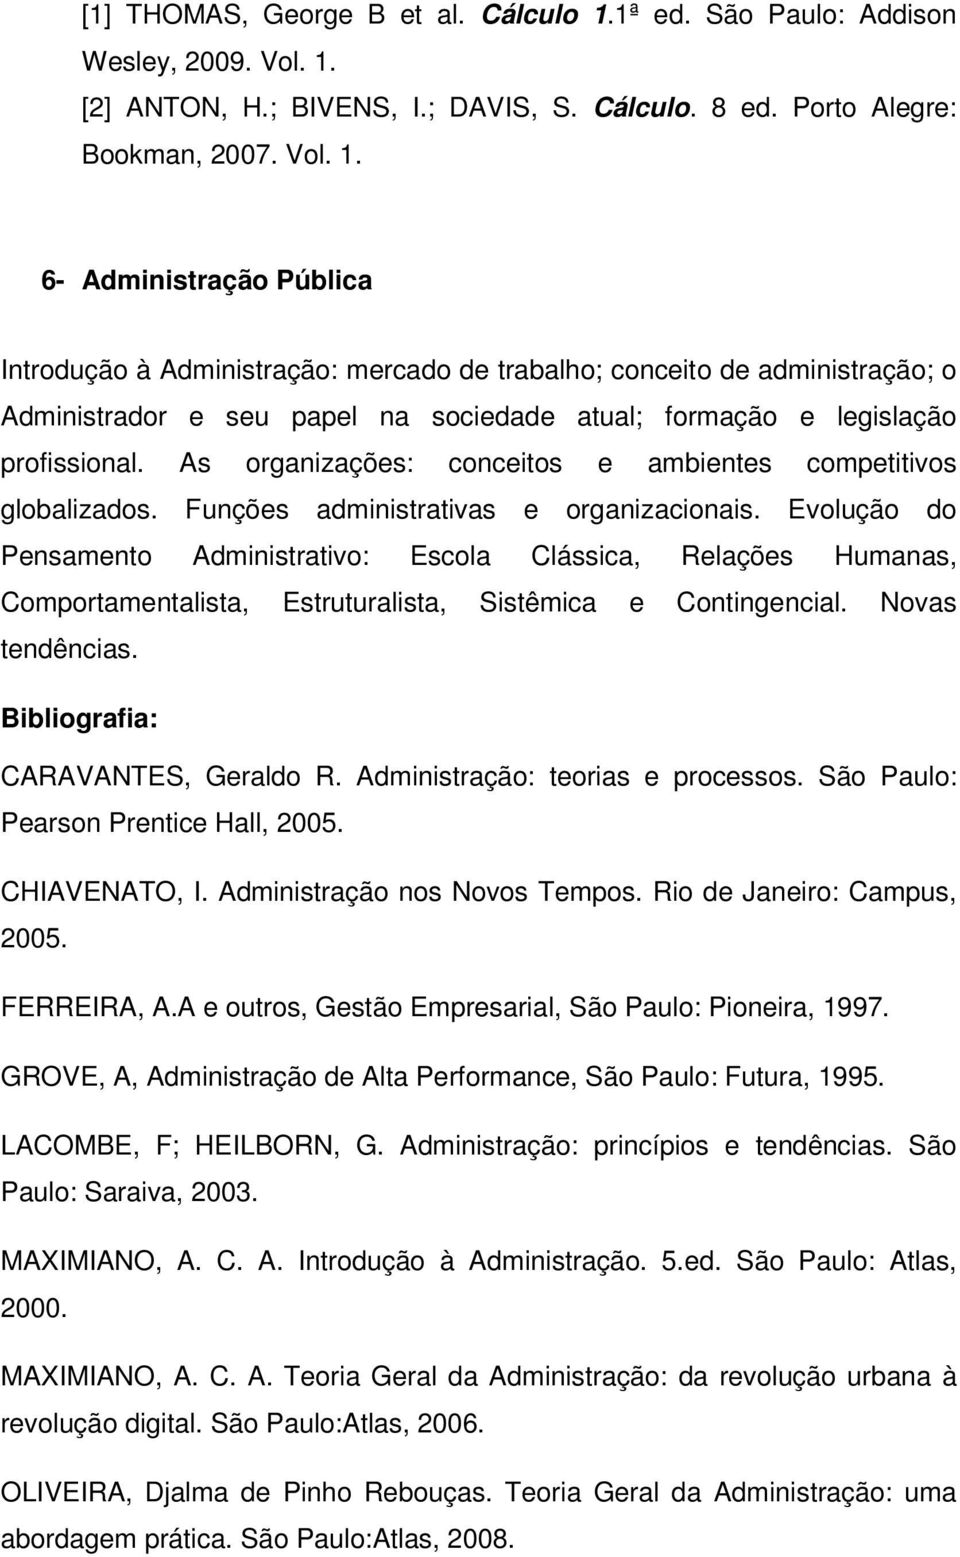 [2] ANTON, H.; BIVENS, I.; DAVIS, S. Cálculo. 8 ed. Porto Alegre: Bookman, 2007. Vol. 1.